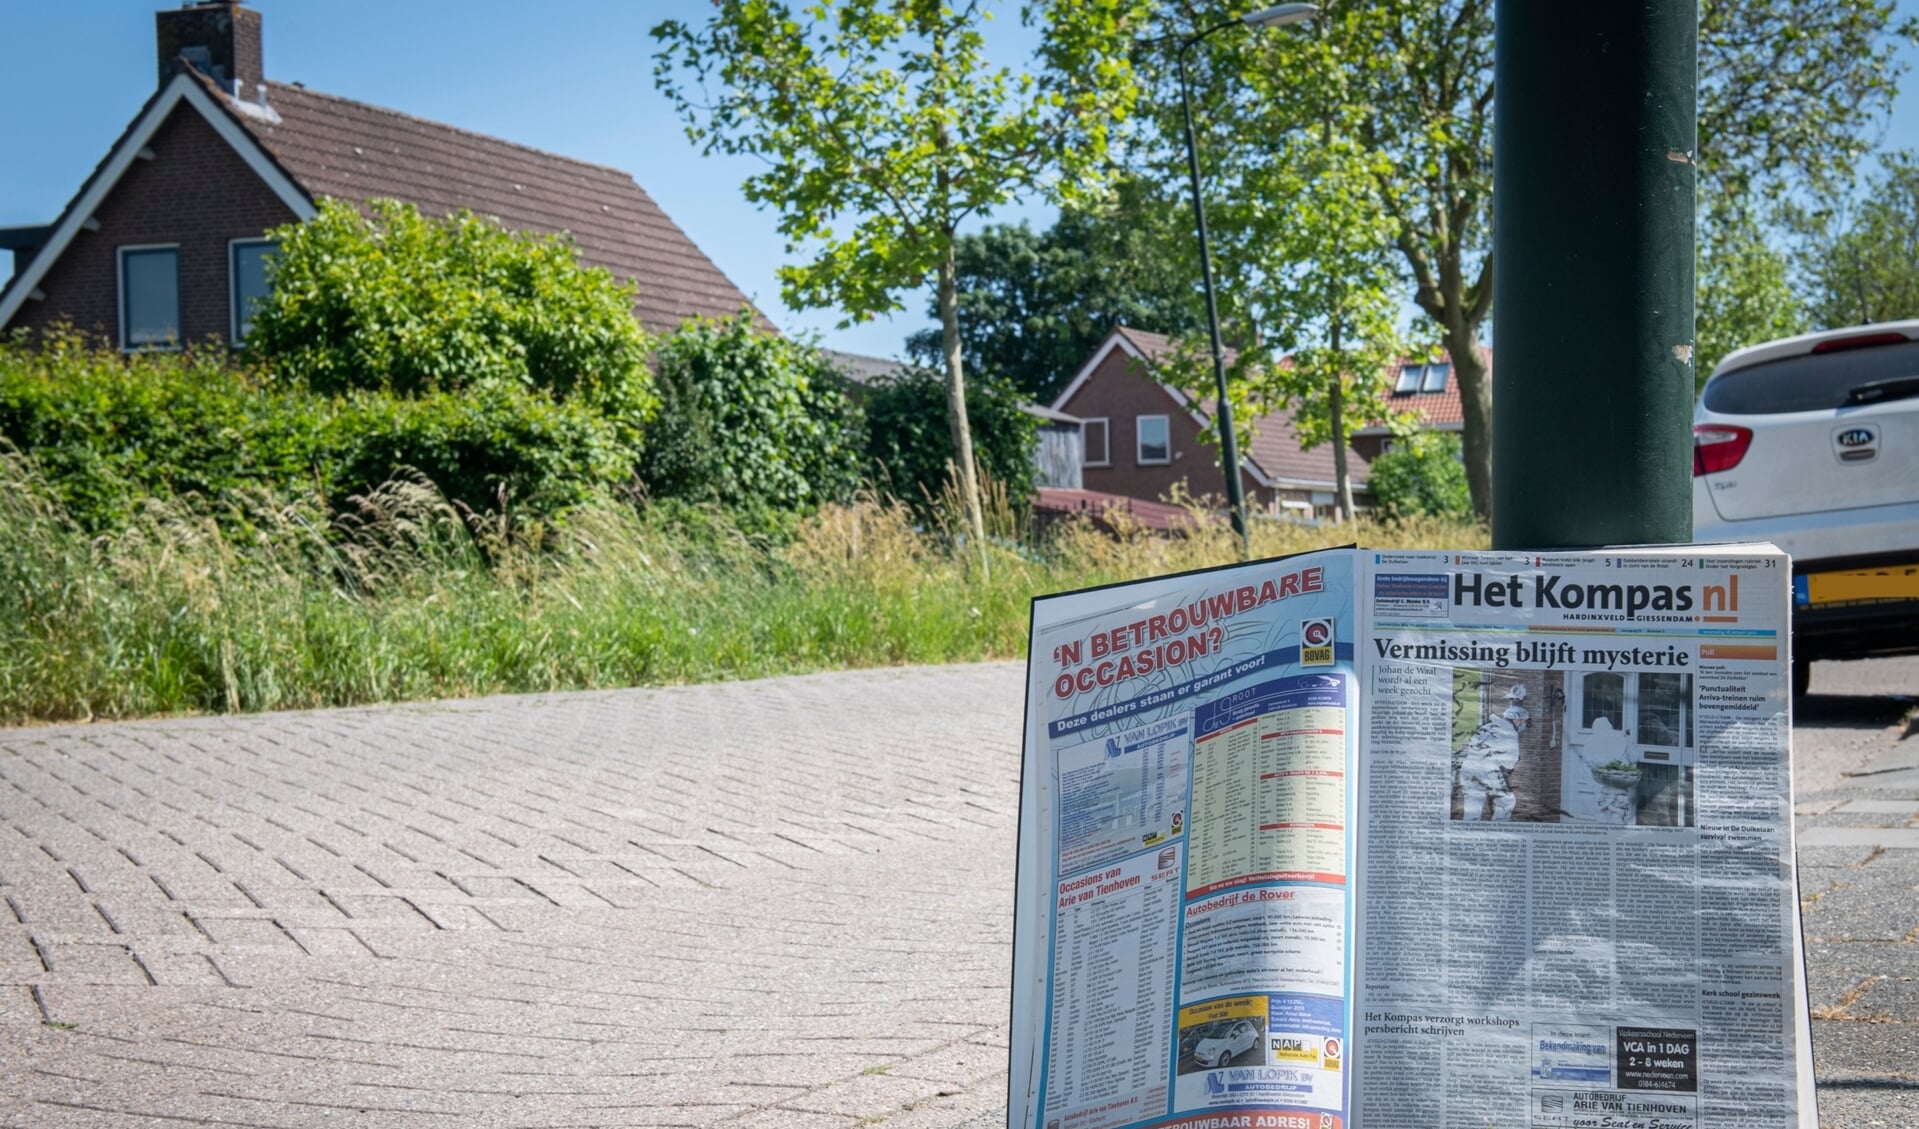 Tien jaar geleden schreef Het Kompas al over de verdwijning van Johan de Waal. Op de achtergrond de Koningin Wilhelminalaan. In deze straat lag het erf van De Waal, waar een fatale worsteling moet hebben plaatsgevonden.